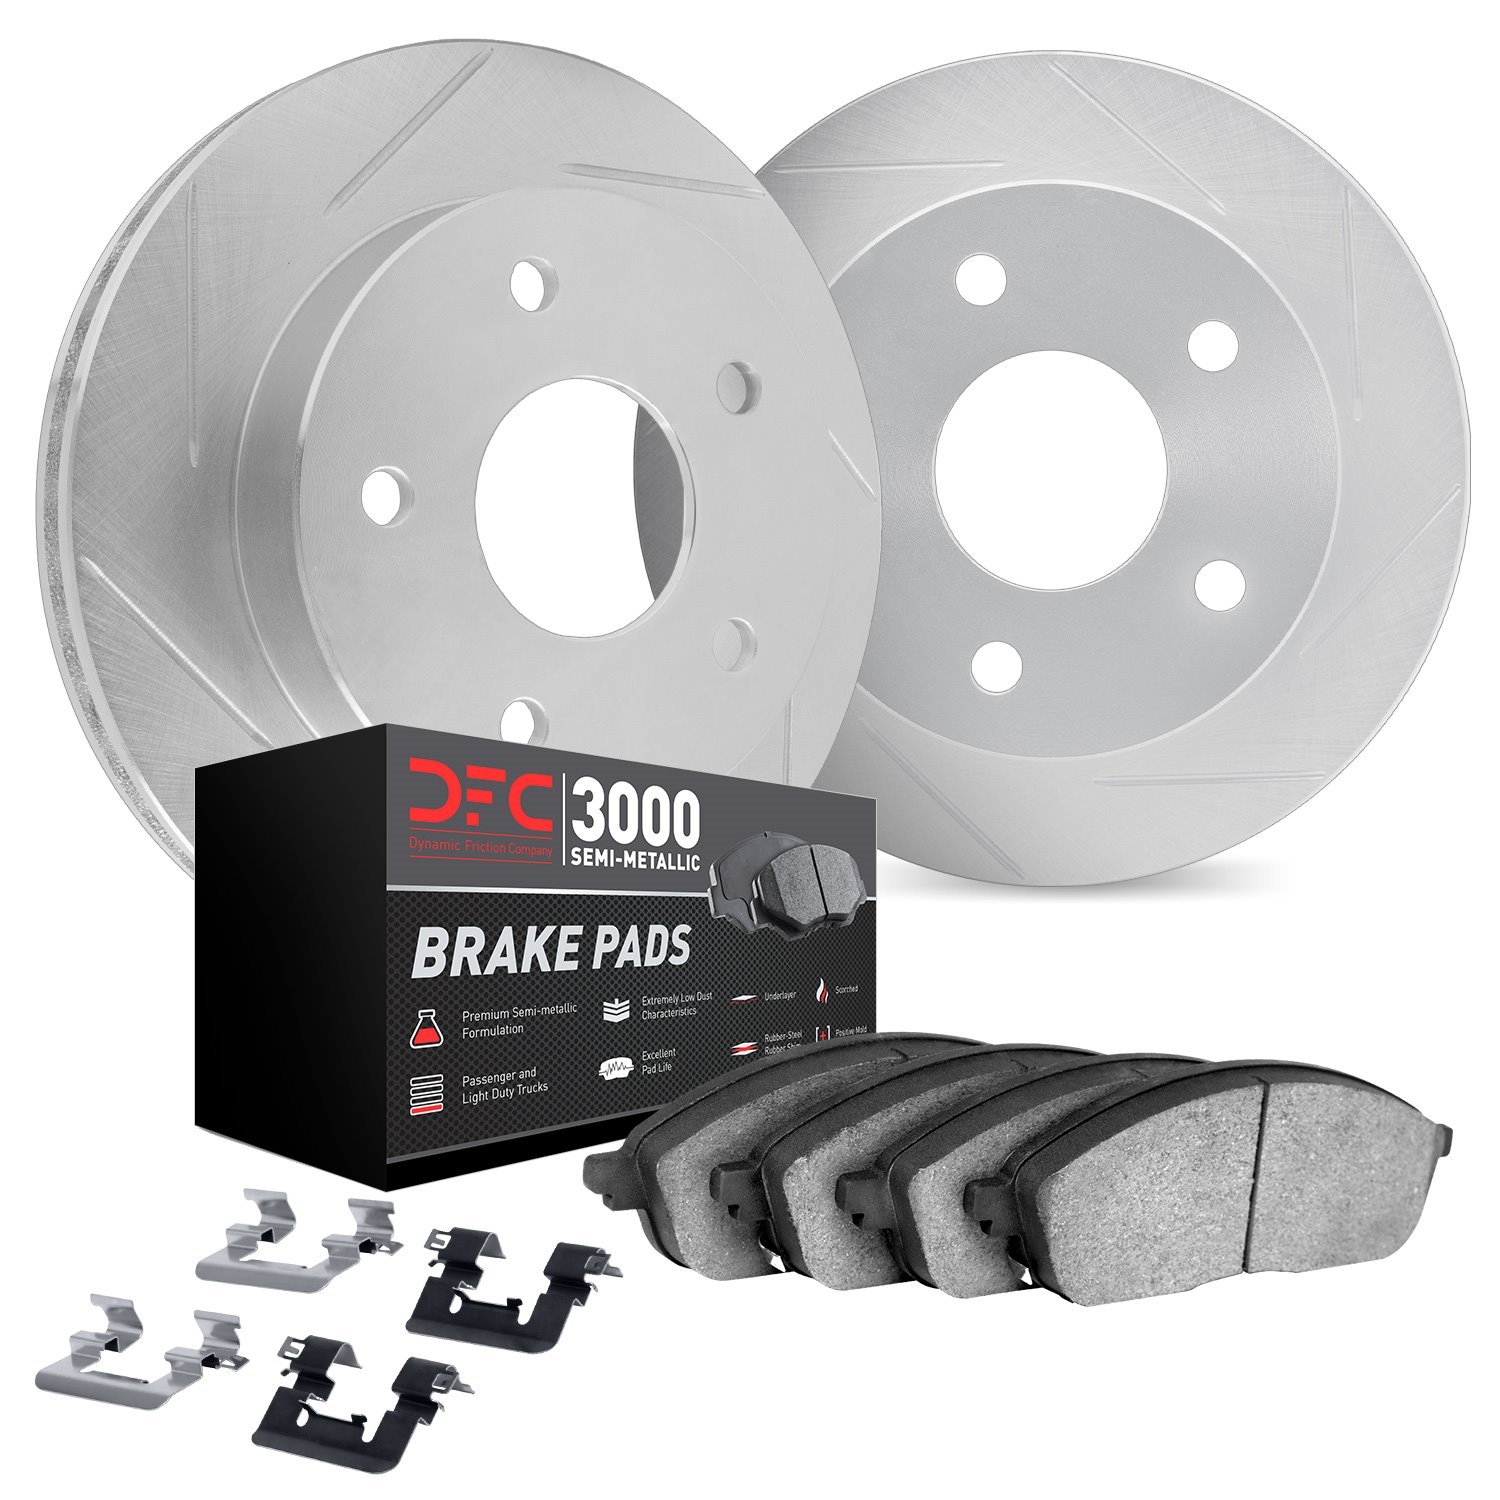 5112-63133 Slotted Brake Rotors with 3000-Series Semi-Metallic Brake Pads Kit & Hardware [Silver], 2012-2019 Mercedes-Benz, Posi